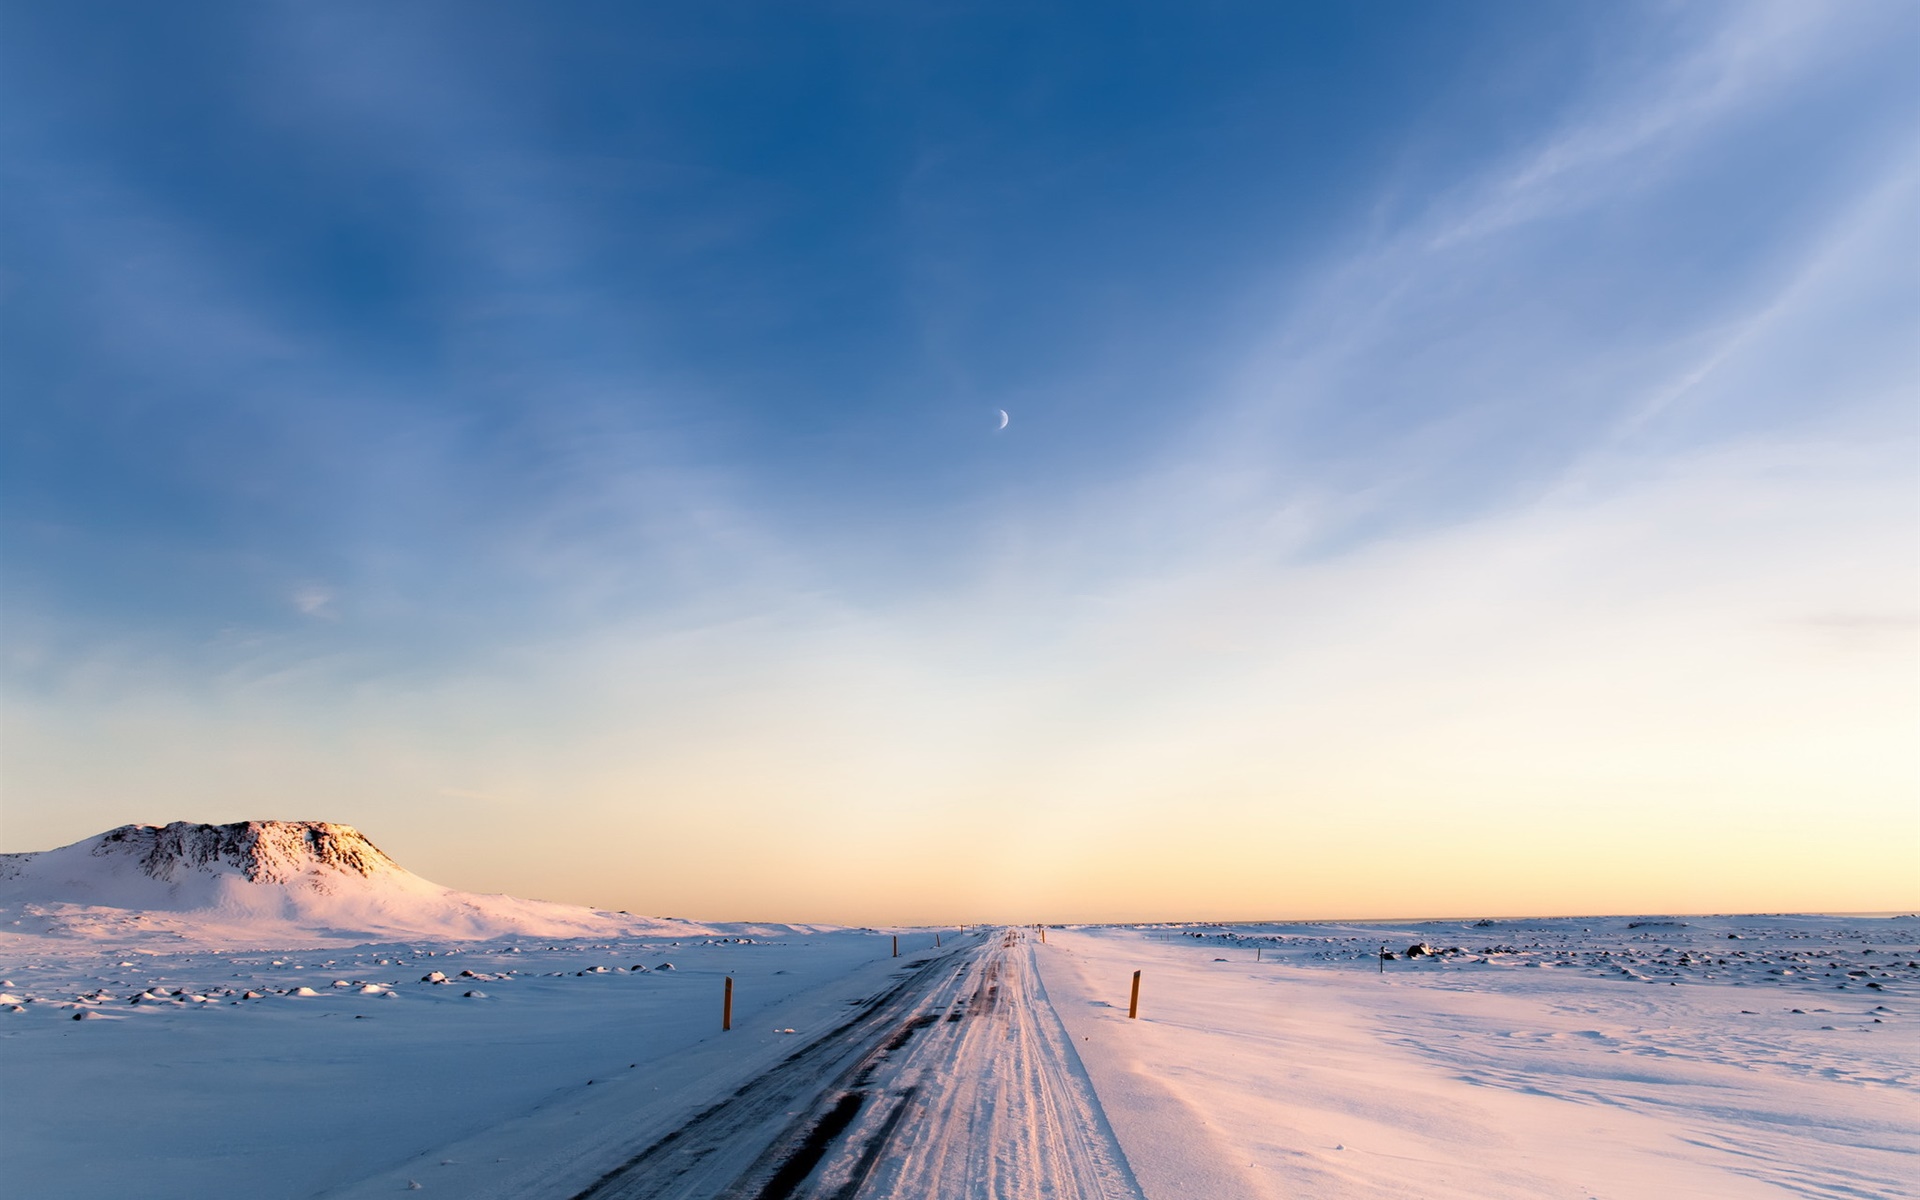 冰岛 冬季 雪 道路 早晨 天空桌面壁纸 19x10 壁纸下载 Cn Hdwall365 Com